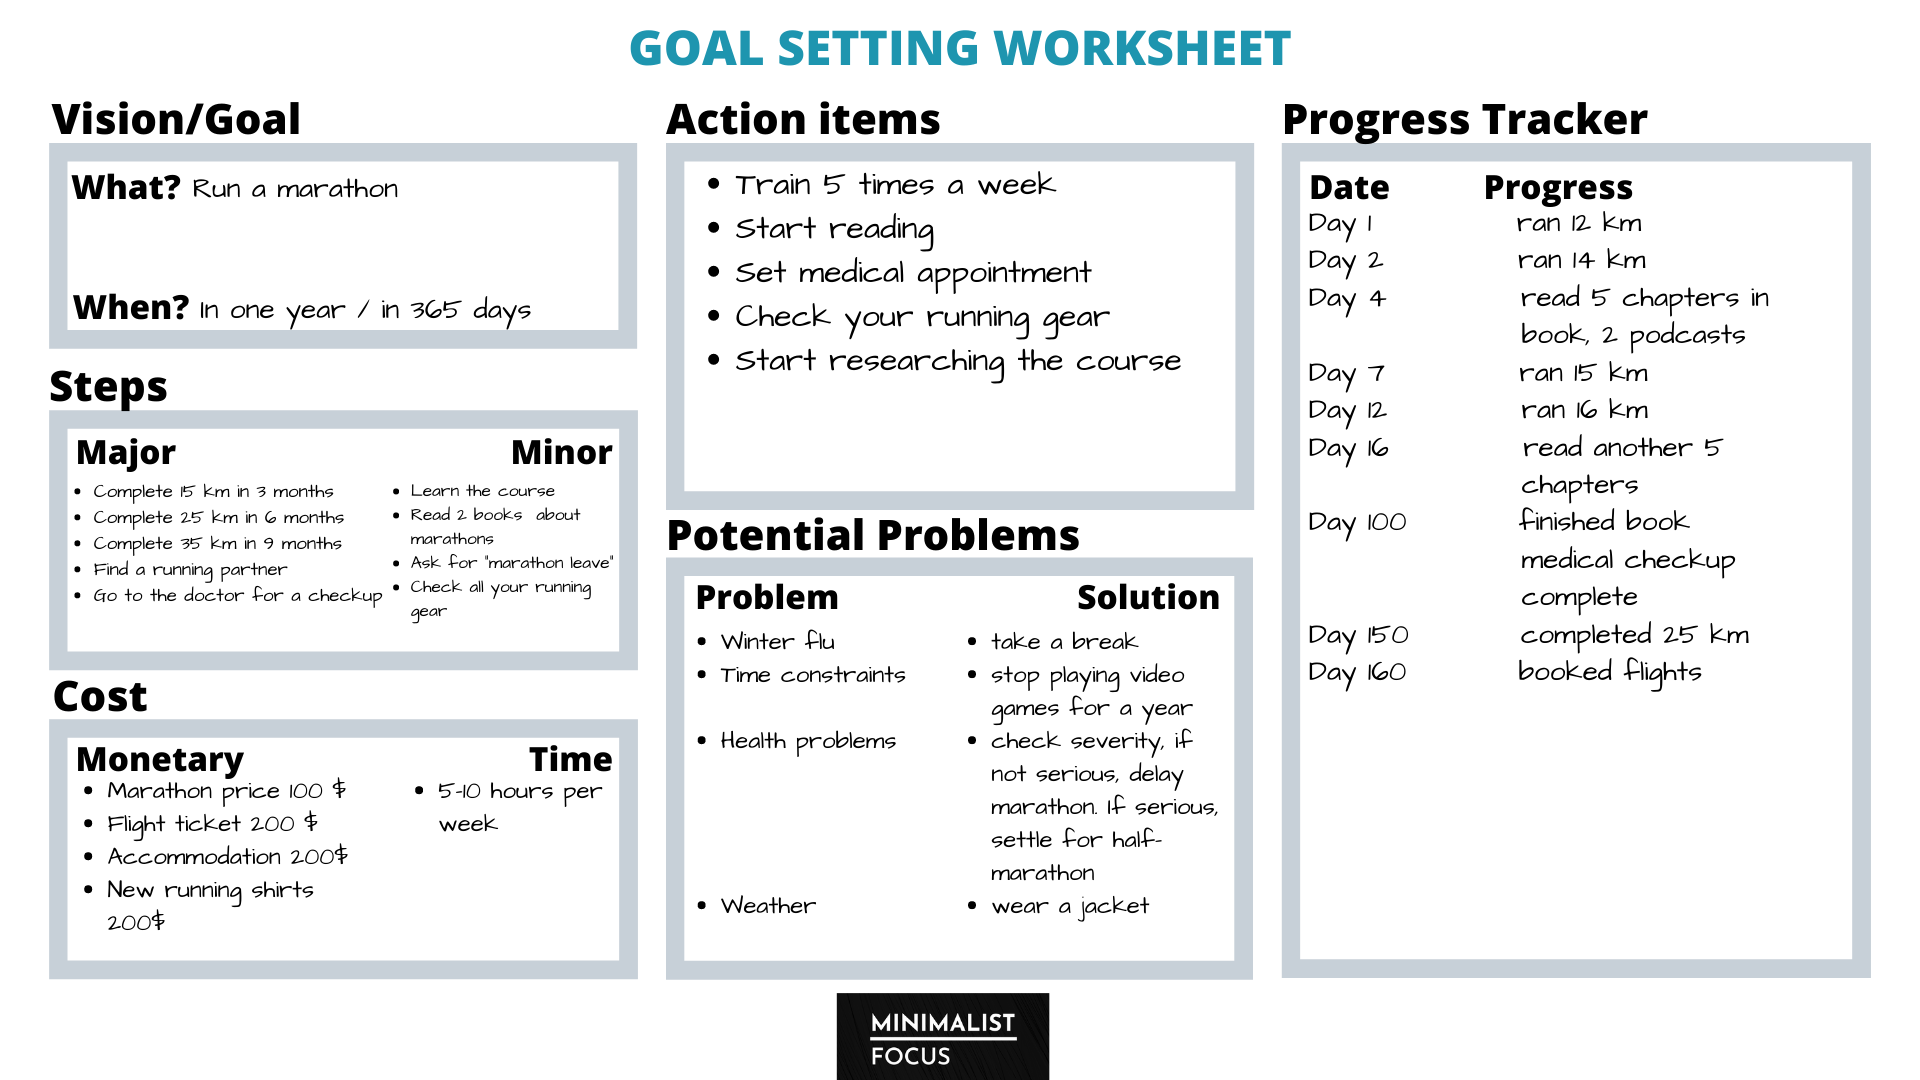 Worksheet goal setting Goal Setting